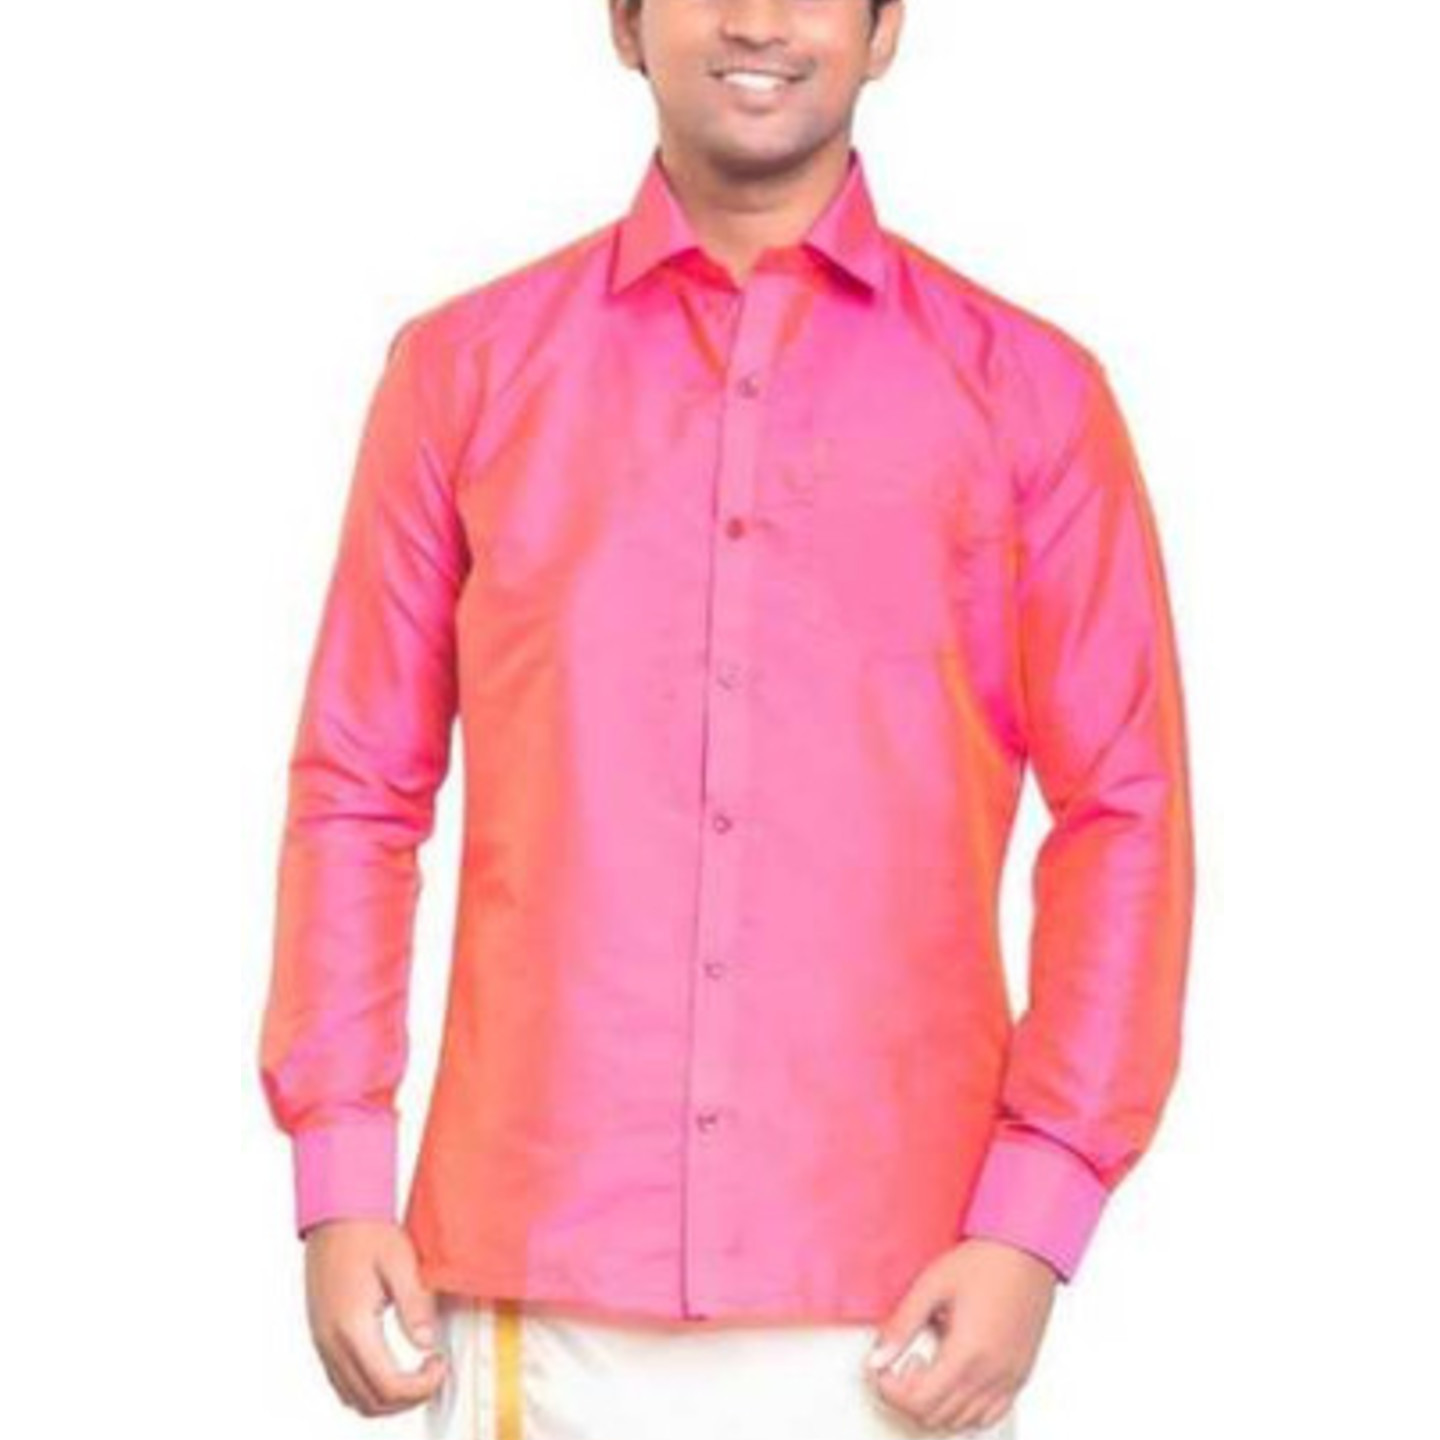 Baby Pink Dupion Silk Shirts Buy Silk Dupion Shirts Pure Silk Shirts